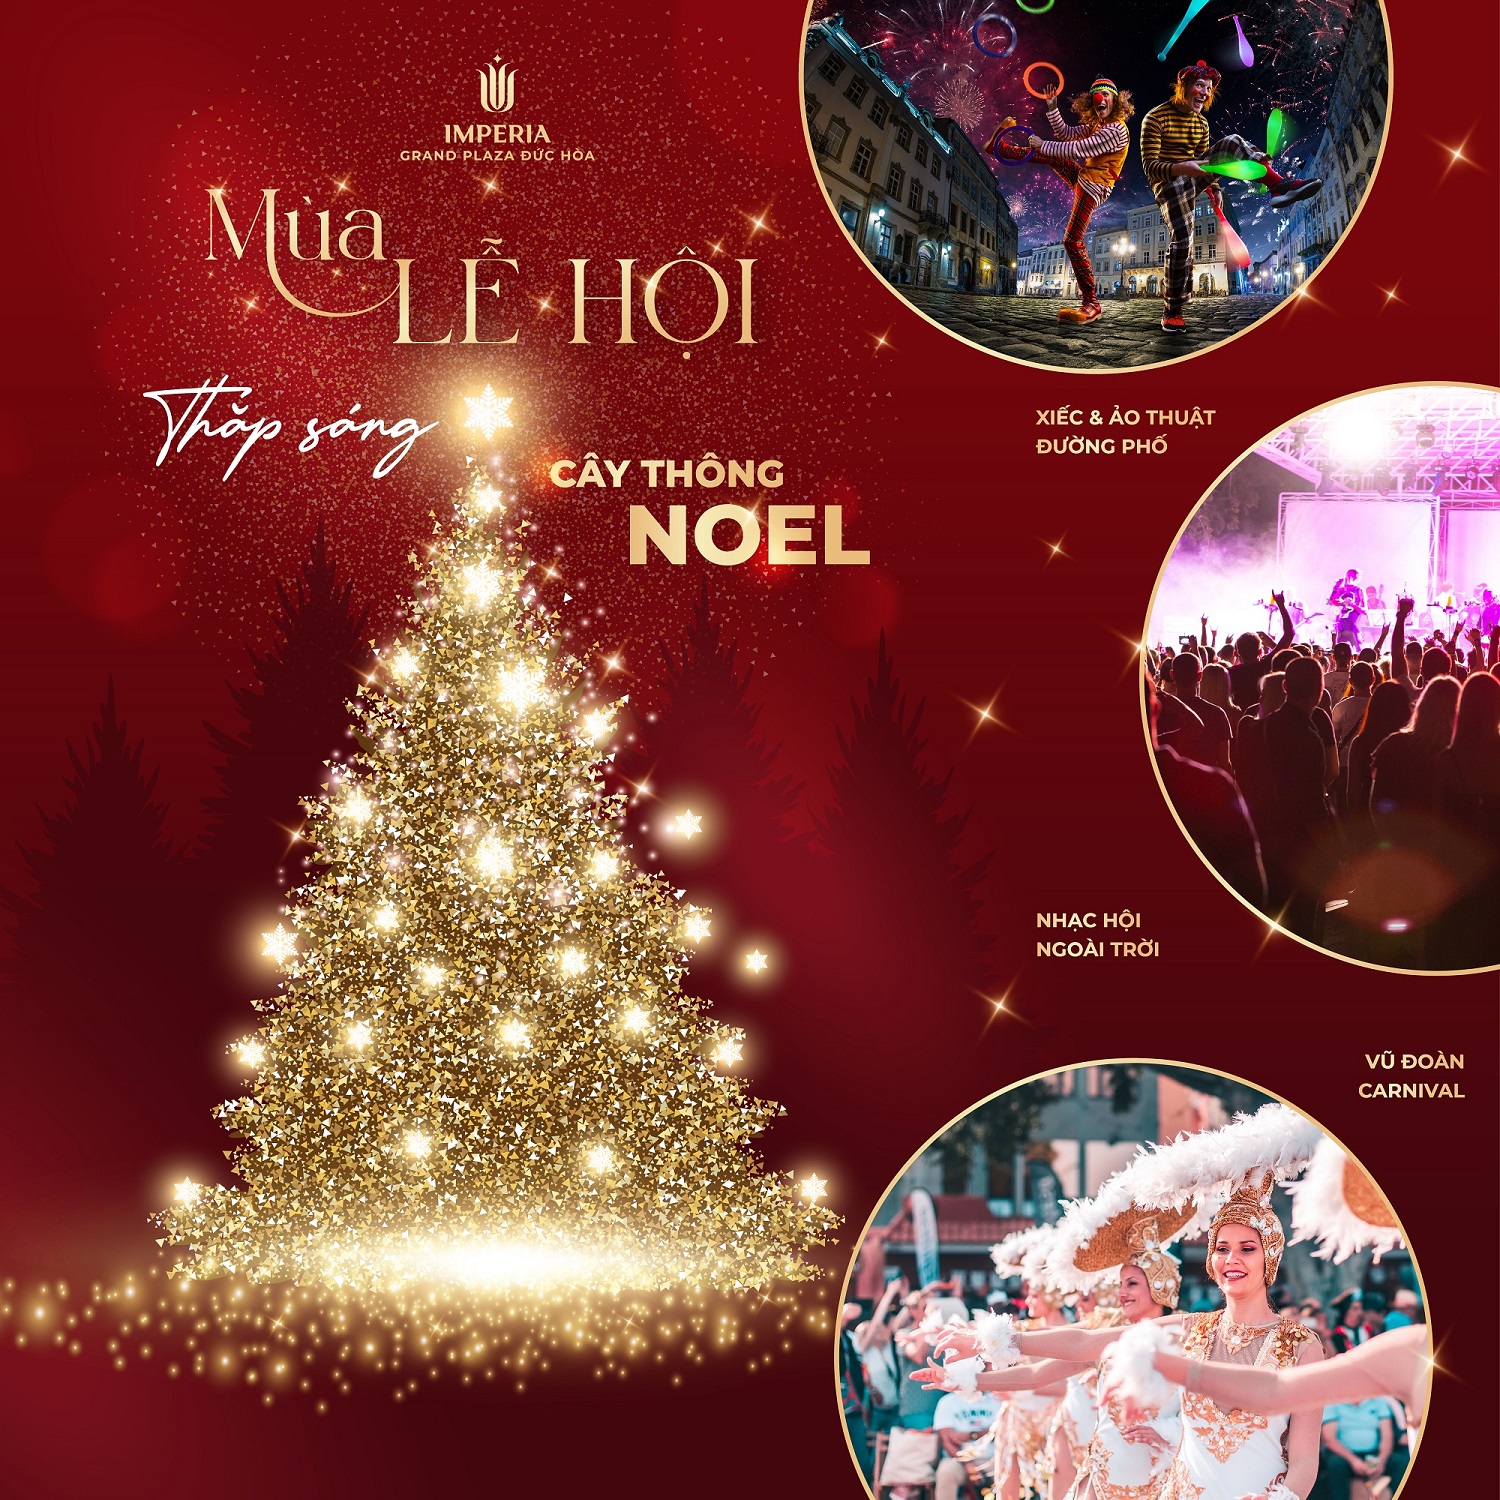 Chuỗi sự kiện đặc sắc và quy mô lần đầu tiên xuất hiện trong dịp Giáng sinh và năm mới tại Đứcp/Hòa.